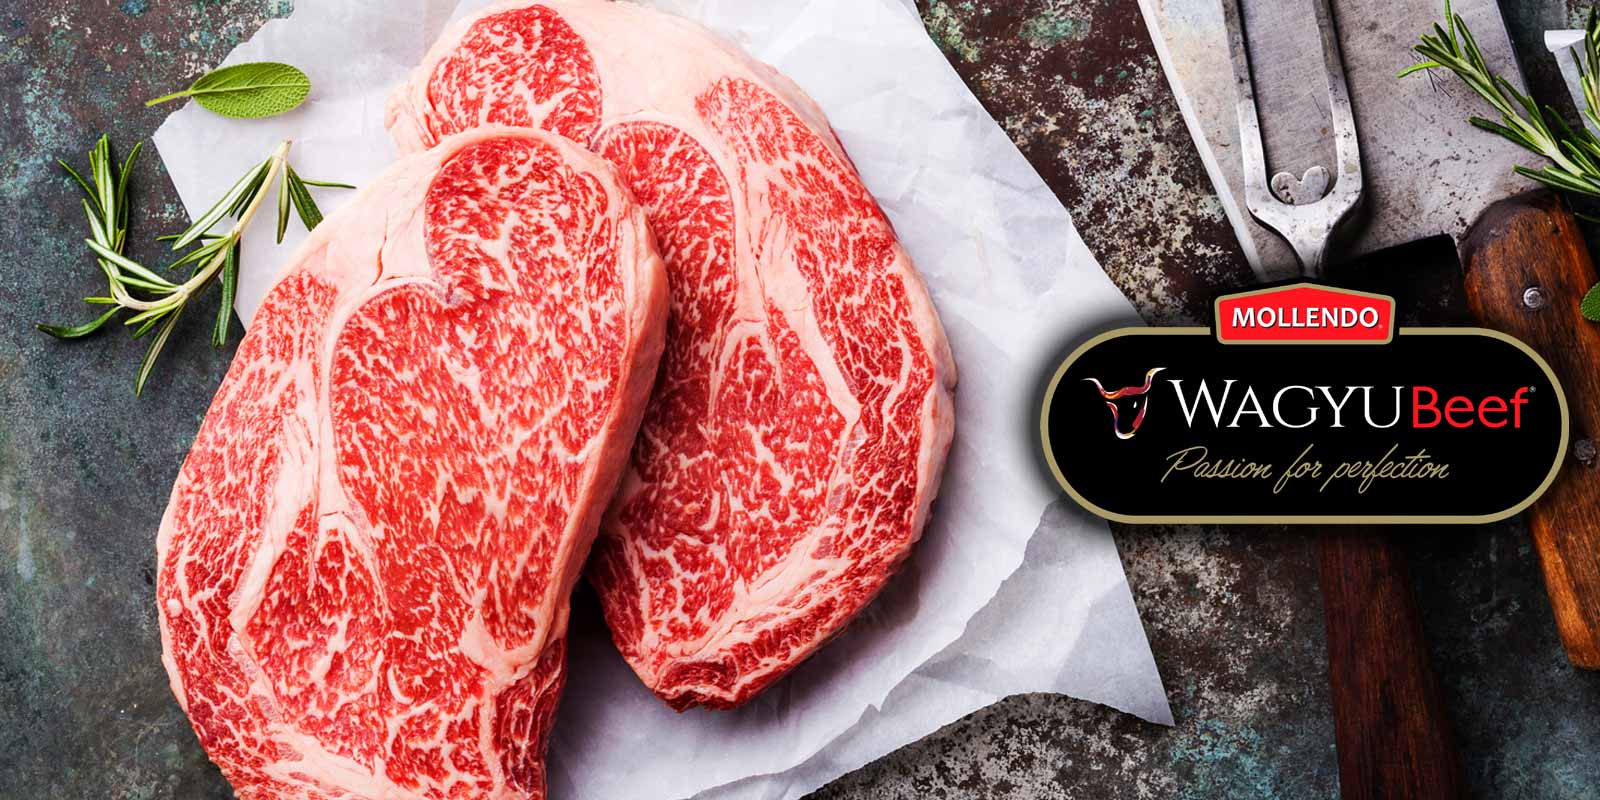 Wagyu Beef, Fleisch von Mollendo aus Chile Agrícola Mollendo ist der größte Hersteller von Wagyu Beef in Chile und zeichnet sich durch hervorragende Leistungen bei der Aufzucht und Produktion von Rindfleisch aus. Die Qualität des Wagyu-Rinds hängt von seiner Genetik, seiner Handhabung und seiner speziellen Ernährung ab.